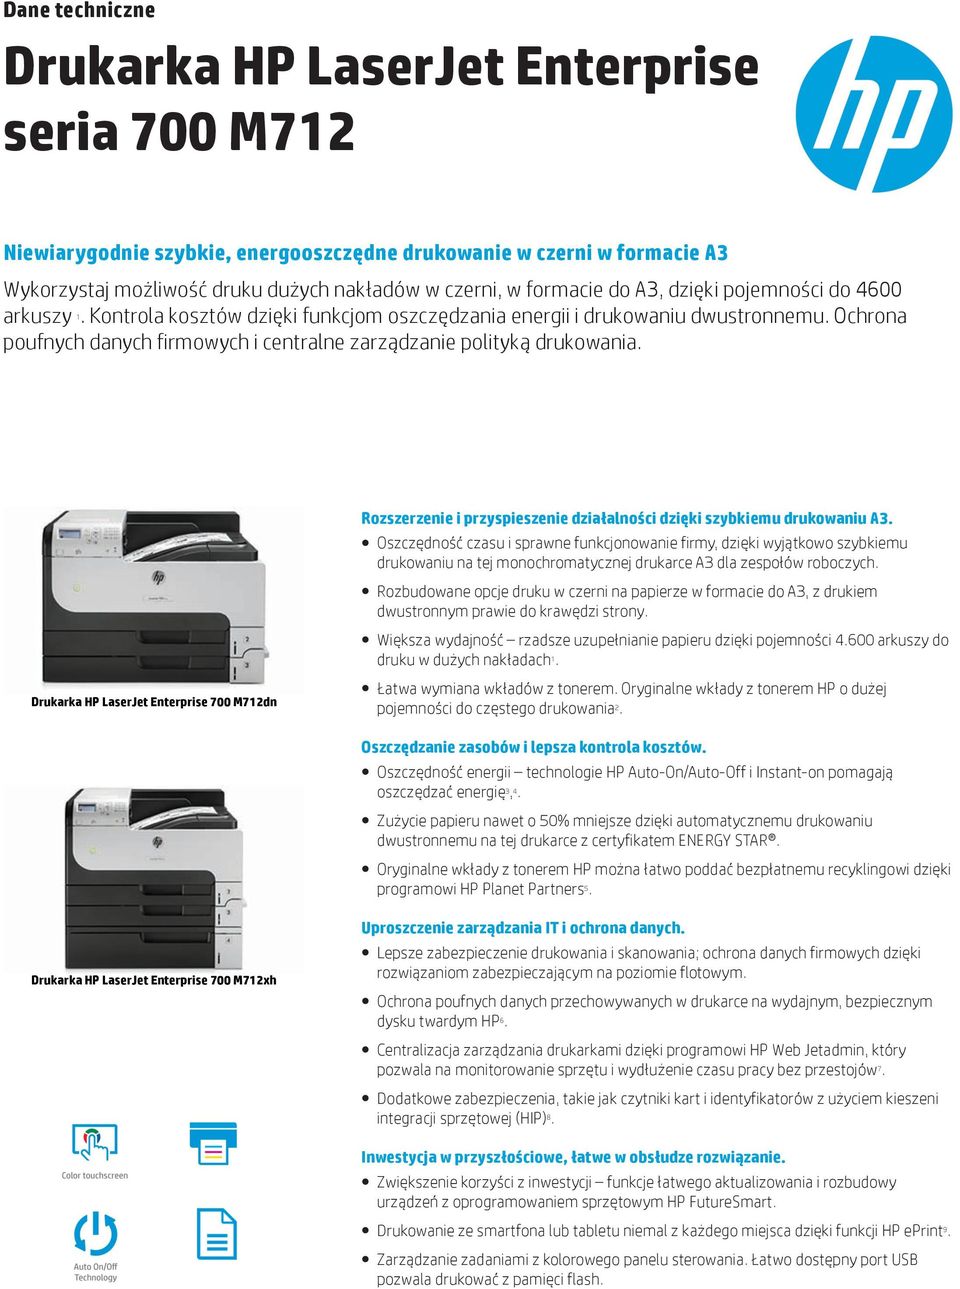 Drukarka HP LaserJet Enterprise 700 dn Rozszerzenie i przyspieszenie działalności dzięki szybkiemu drukowaniu A3.